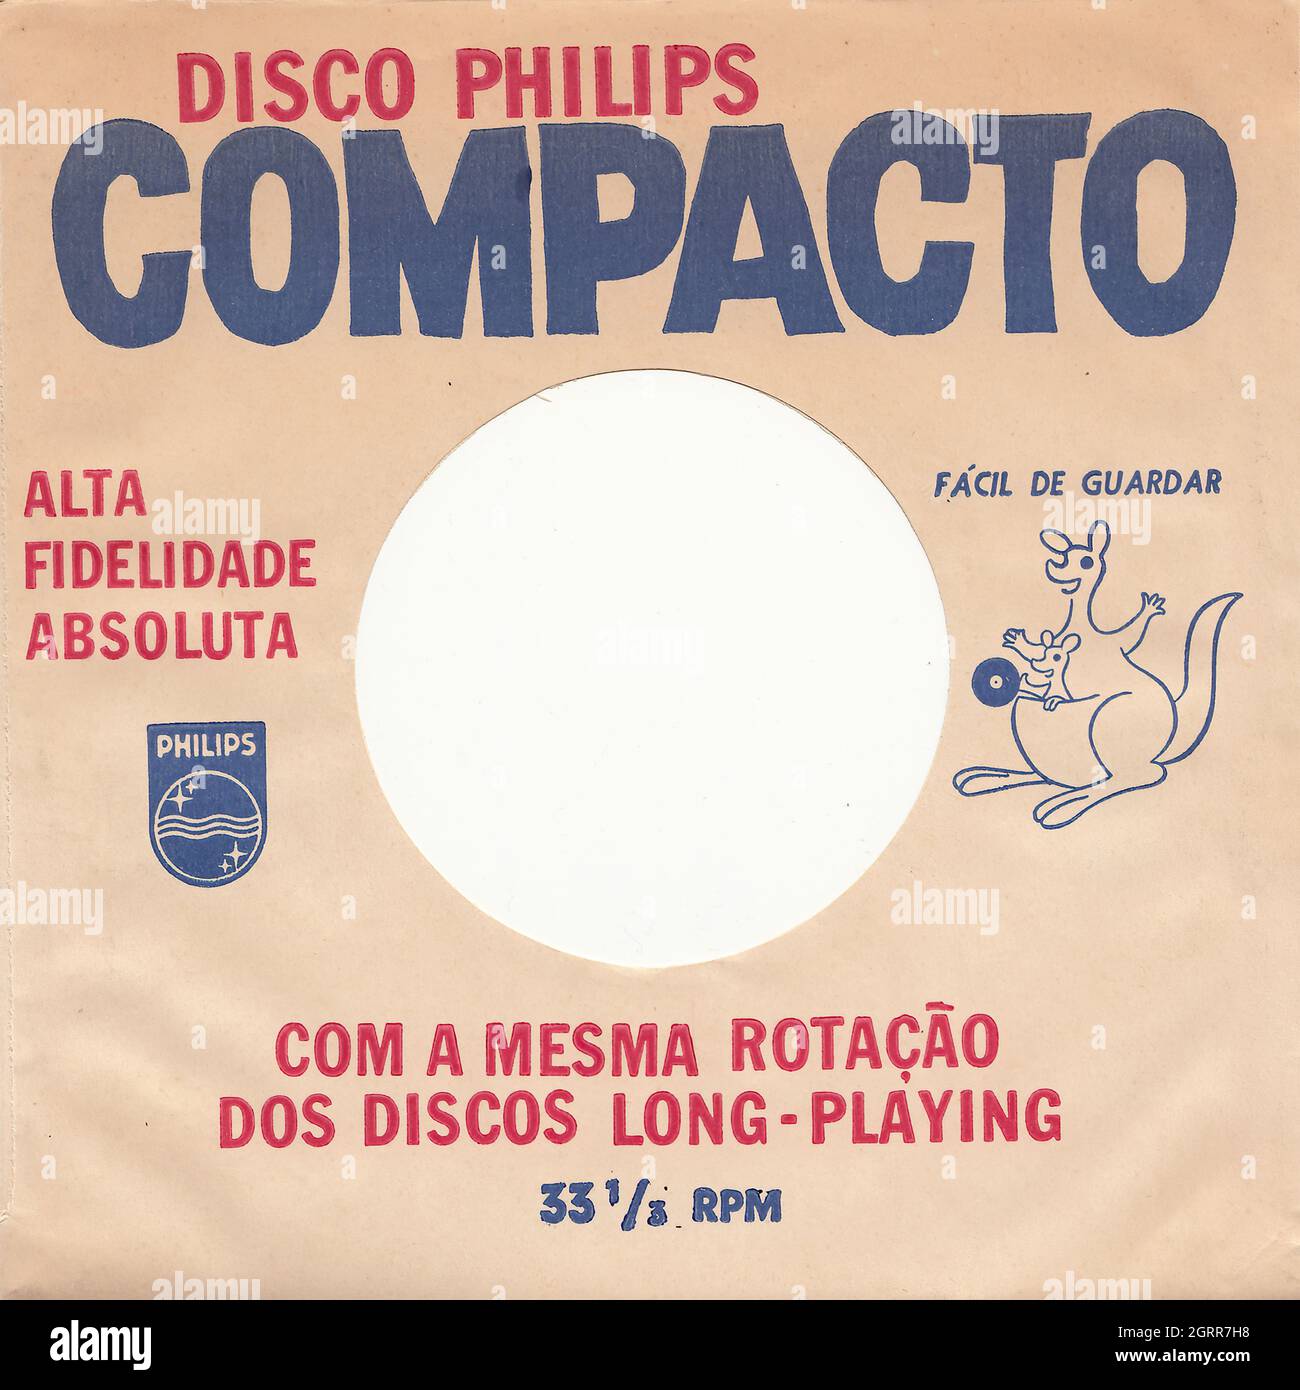 Escola De Samba Da Cidade - Batucada vol.2 (Inner Company sleeve) - Vintage Vinyl Record Cover Stock Photo